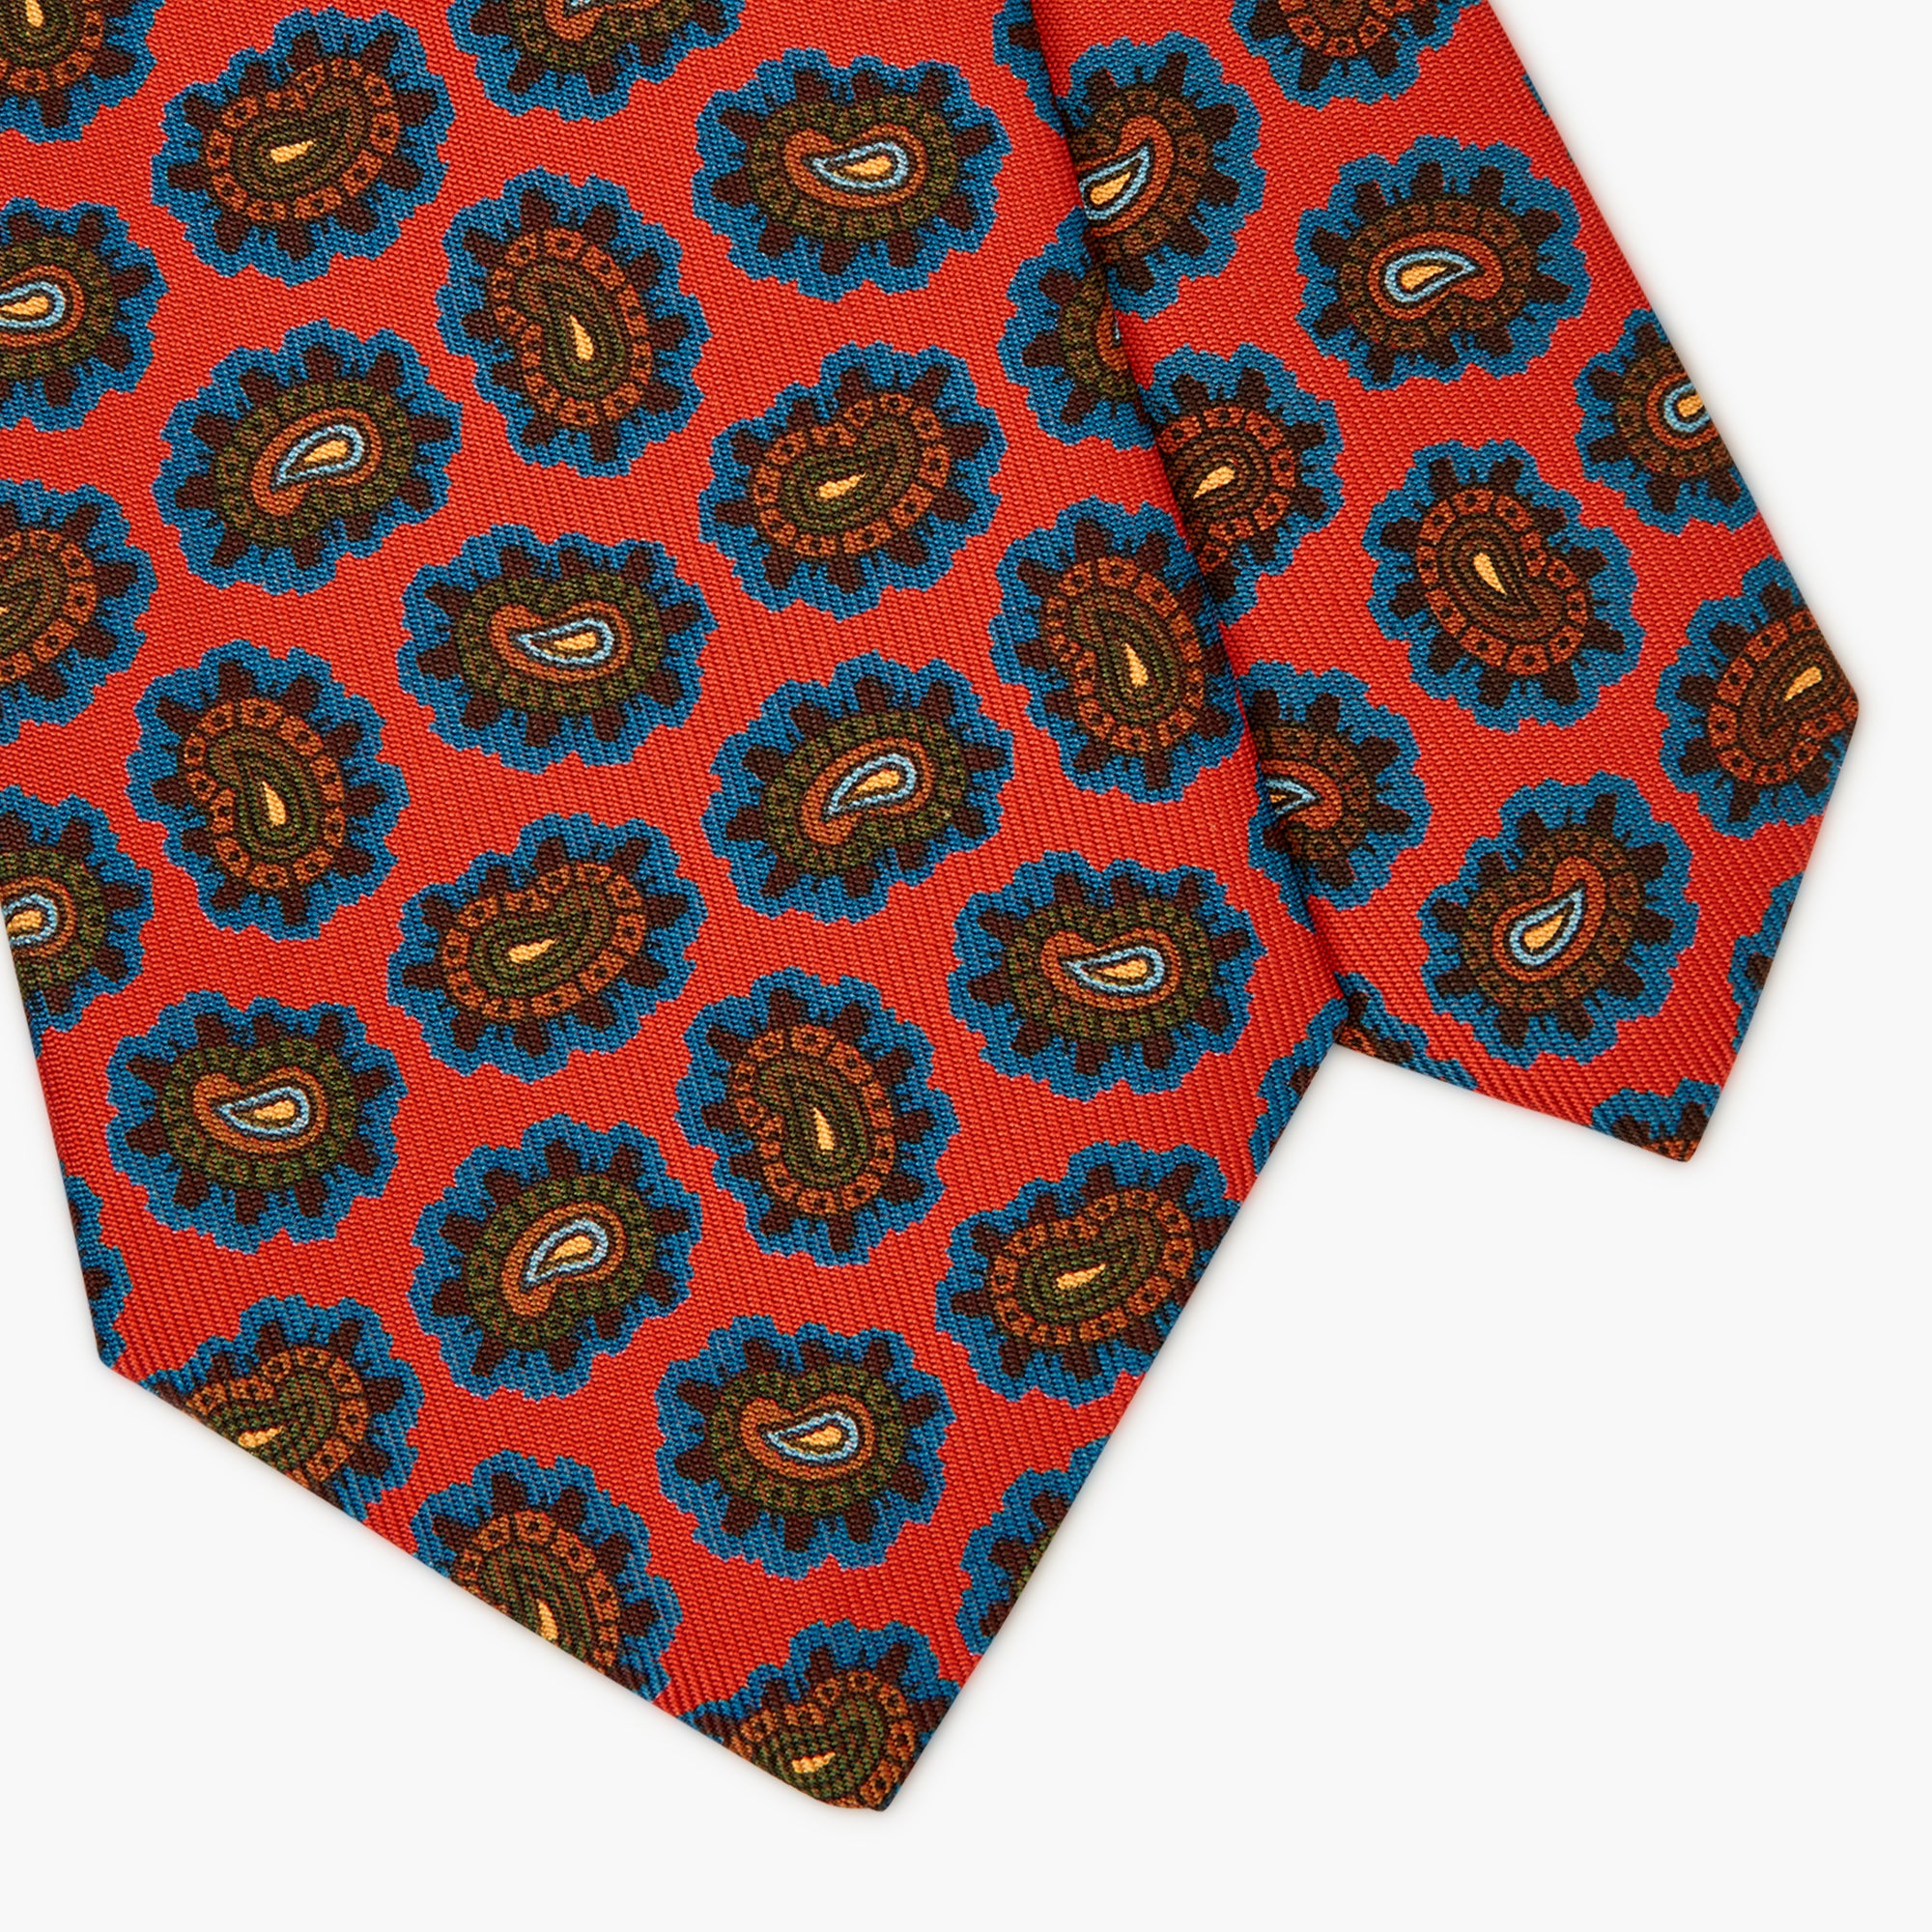 3-Fold Paisley Printed Italian Silk Tie - Red